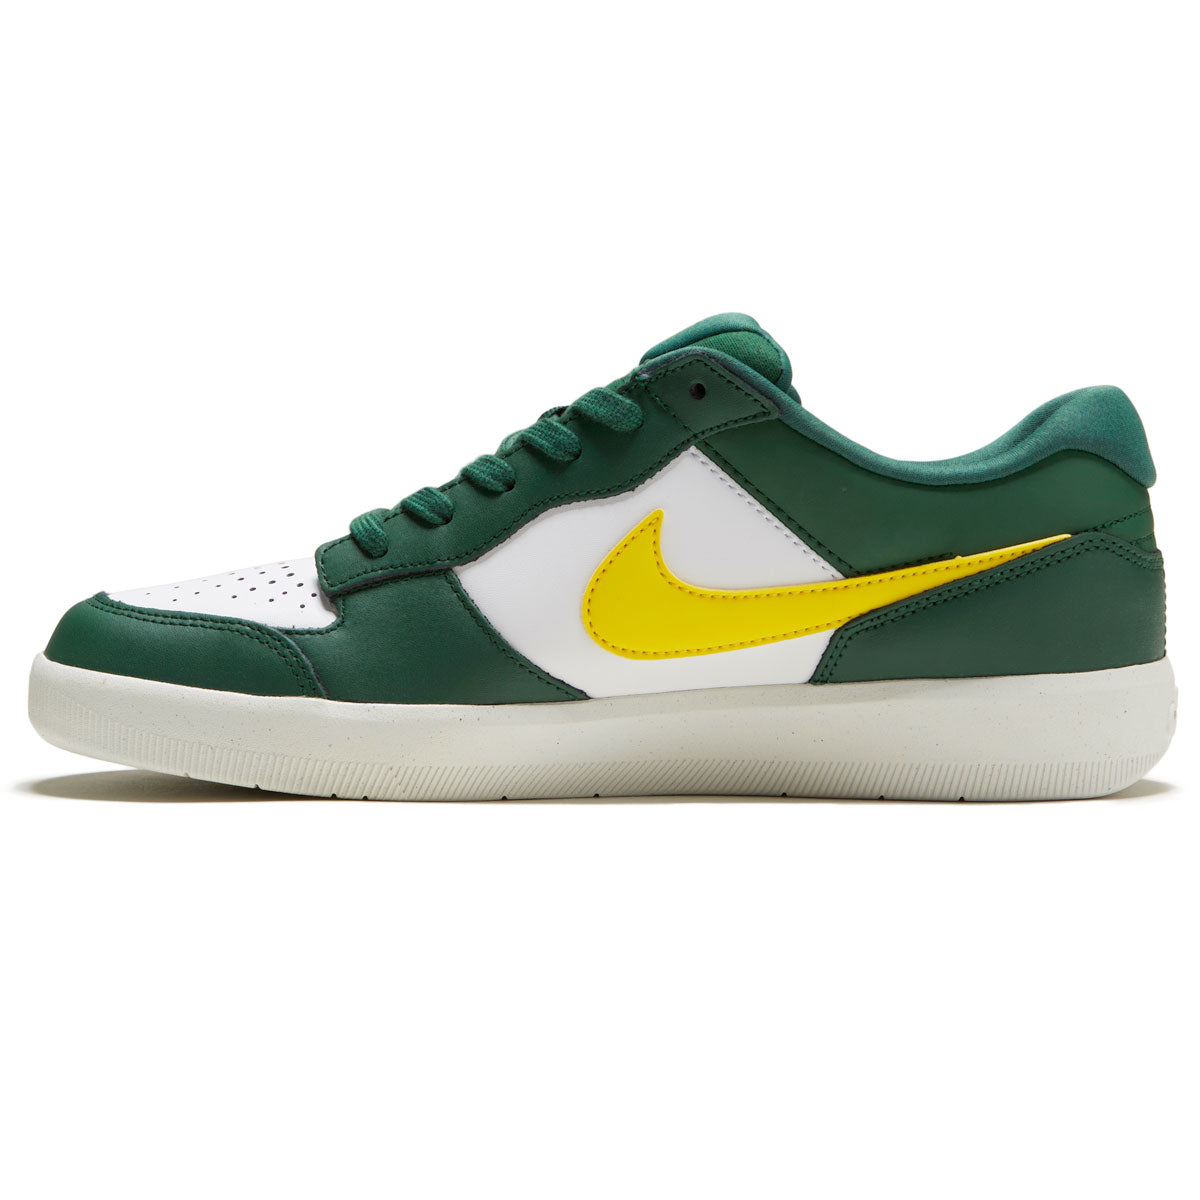 Nike SB 58 Premium Shoes - Green/Tour Yellow/White